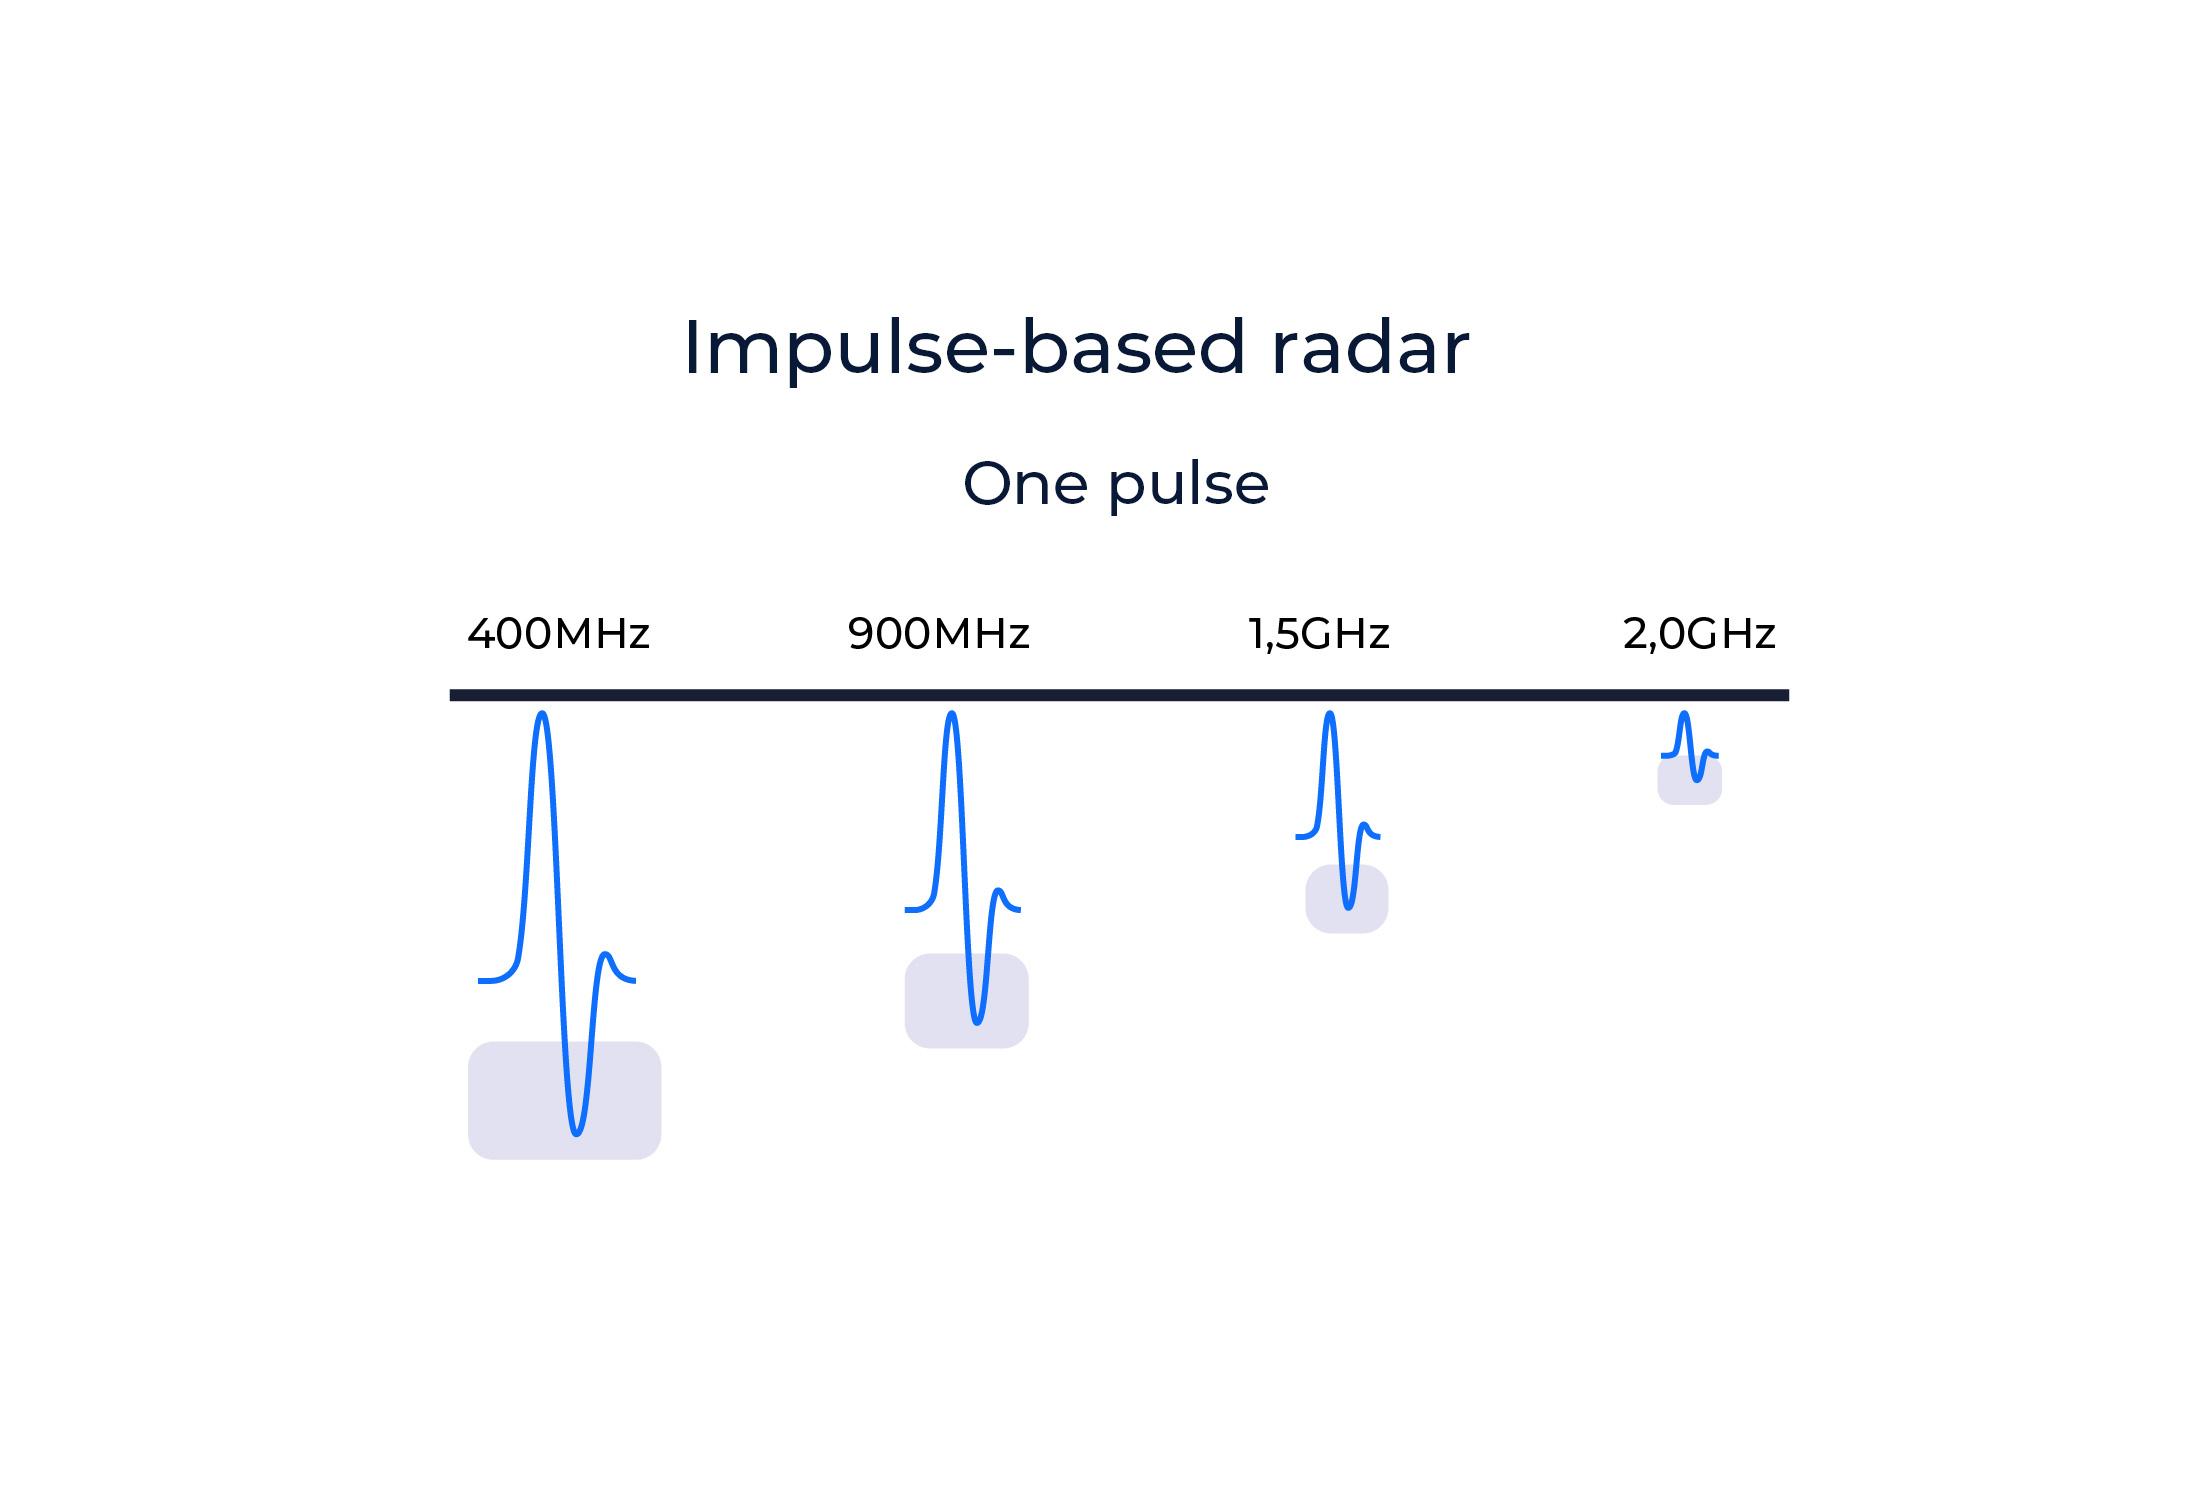 Impulse Radar